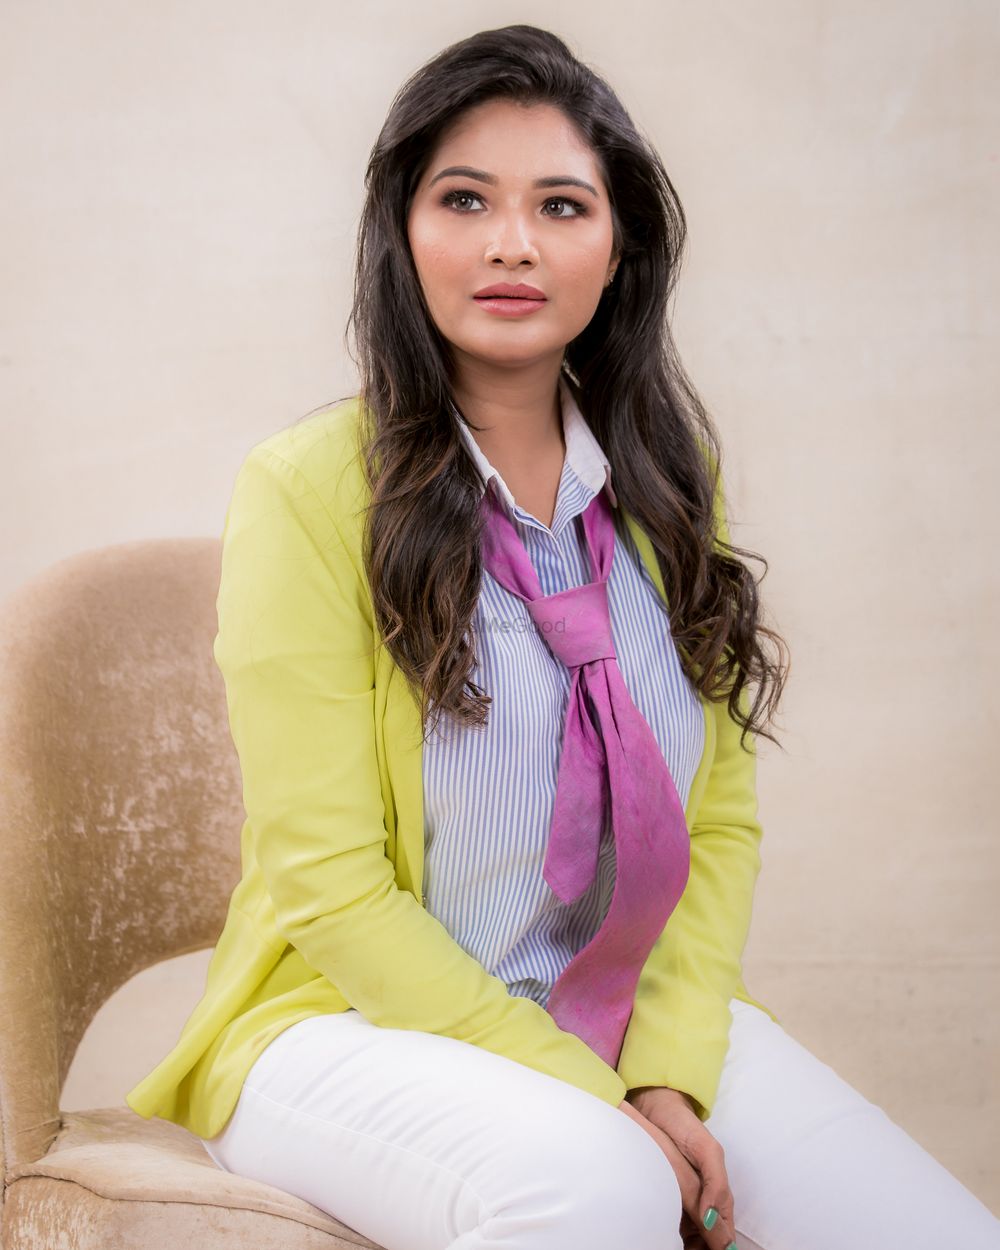 Photo From Actress Sharanya Turadi - By Abhirami_mua